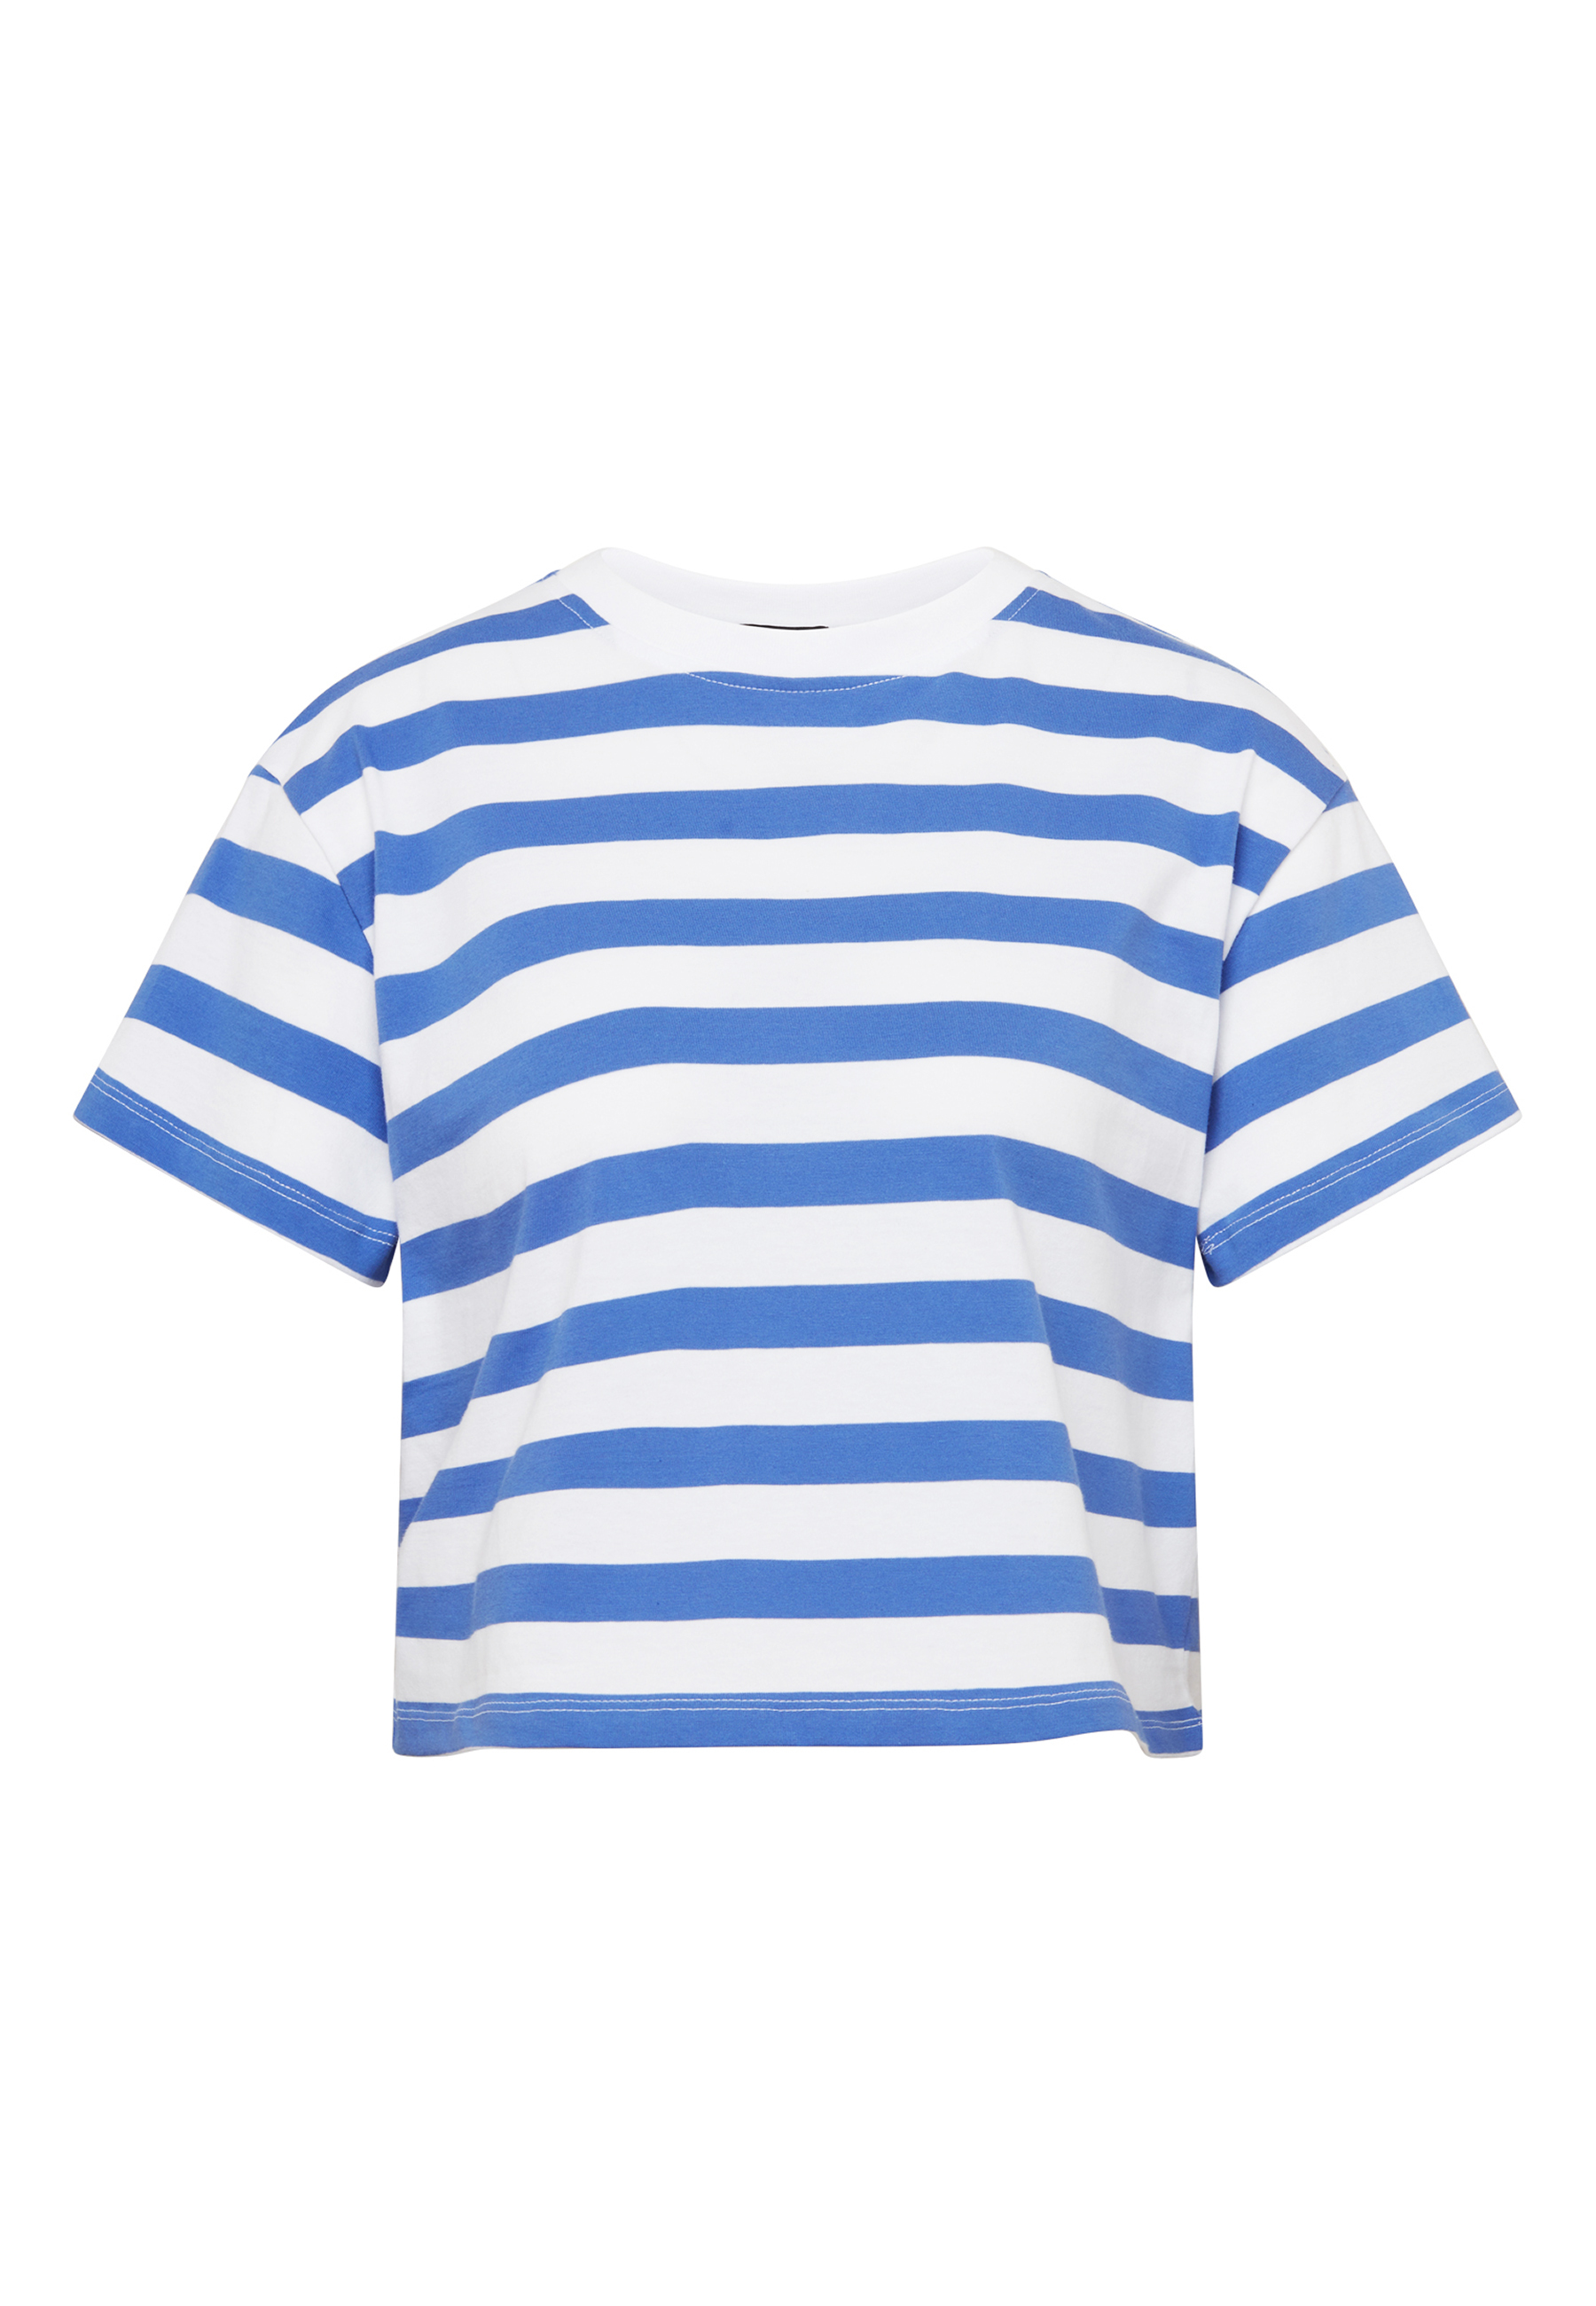 HaILY'S T-Shirt »P TP Ki44mba«, (1 tlg.) kaufen